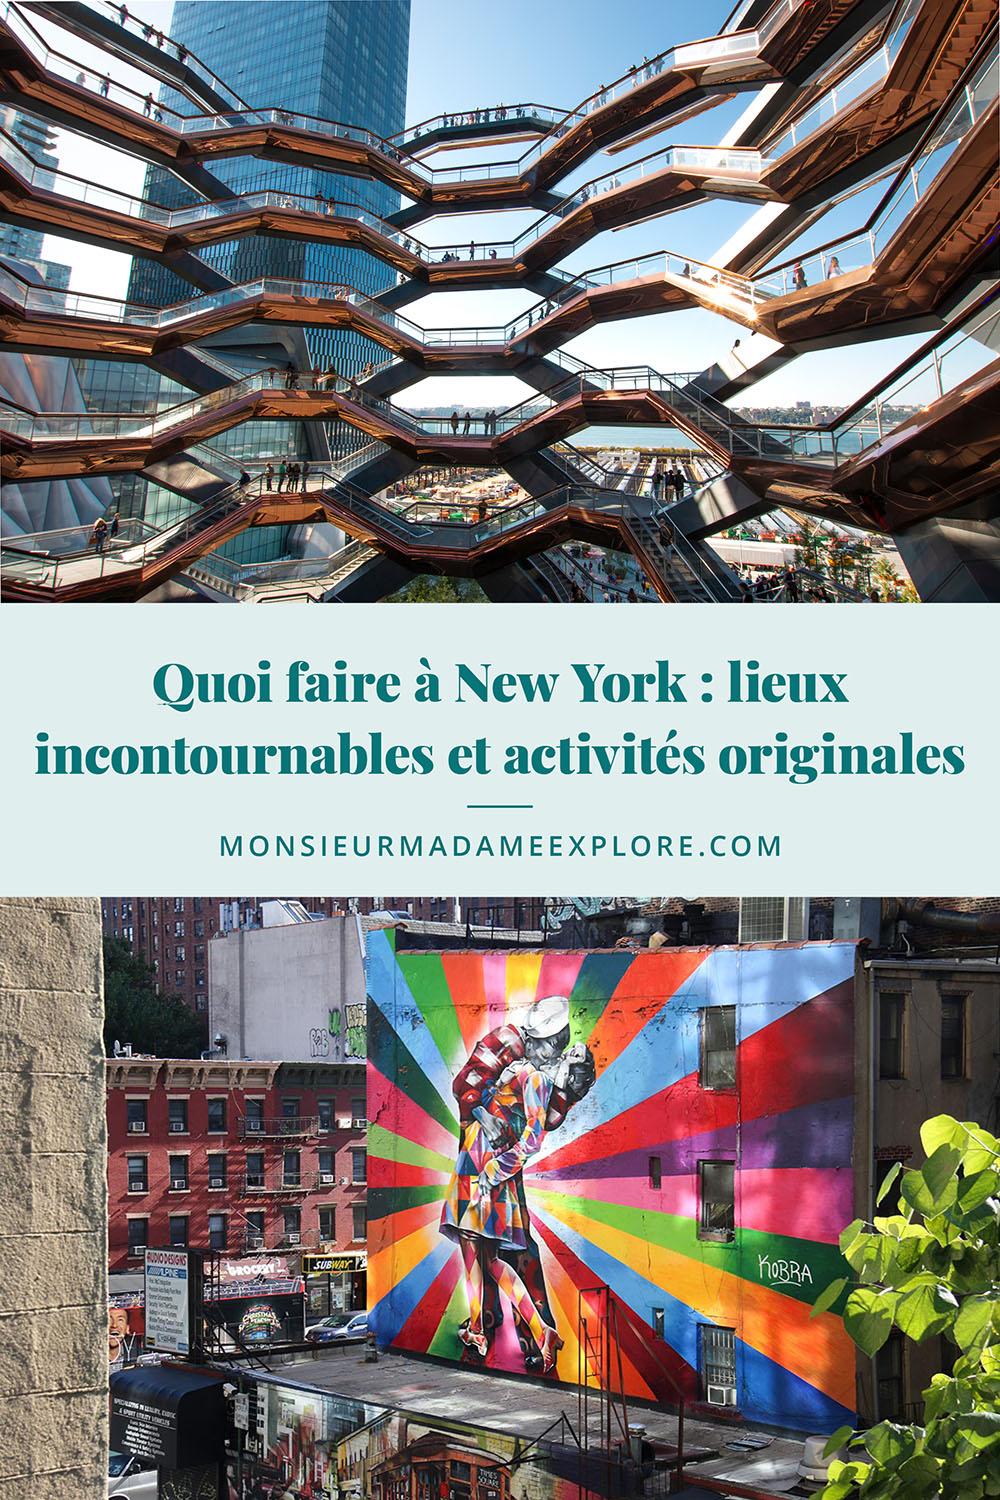 Quoi faire à New York : lieux incontournables et activités originales, Monsieur+Madame Explore, Blogue de voyage, New York, États-Unis / What to do in New York City, USA